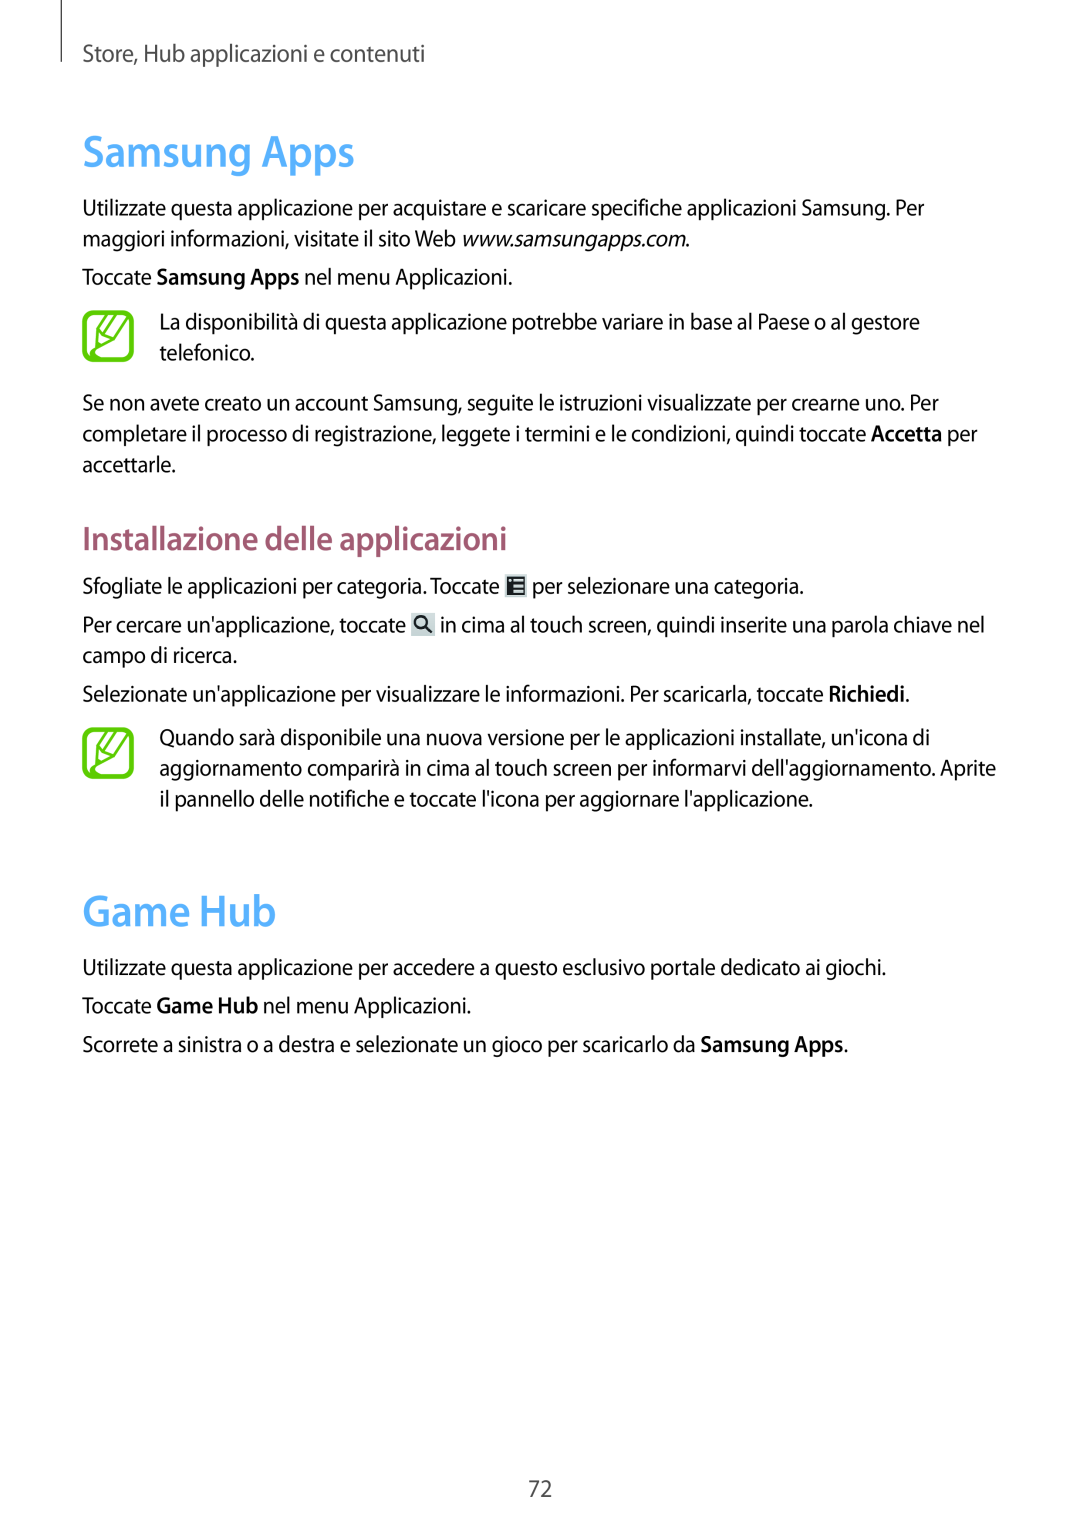 Samsung GT-S6810MBNWIN manual Samsung Apps, Game Hub, Store, Hub applicazioni e contenuti, Installazione delle applicazioni 